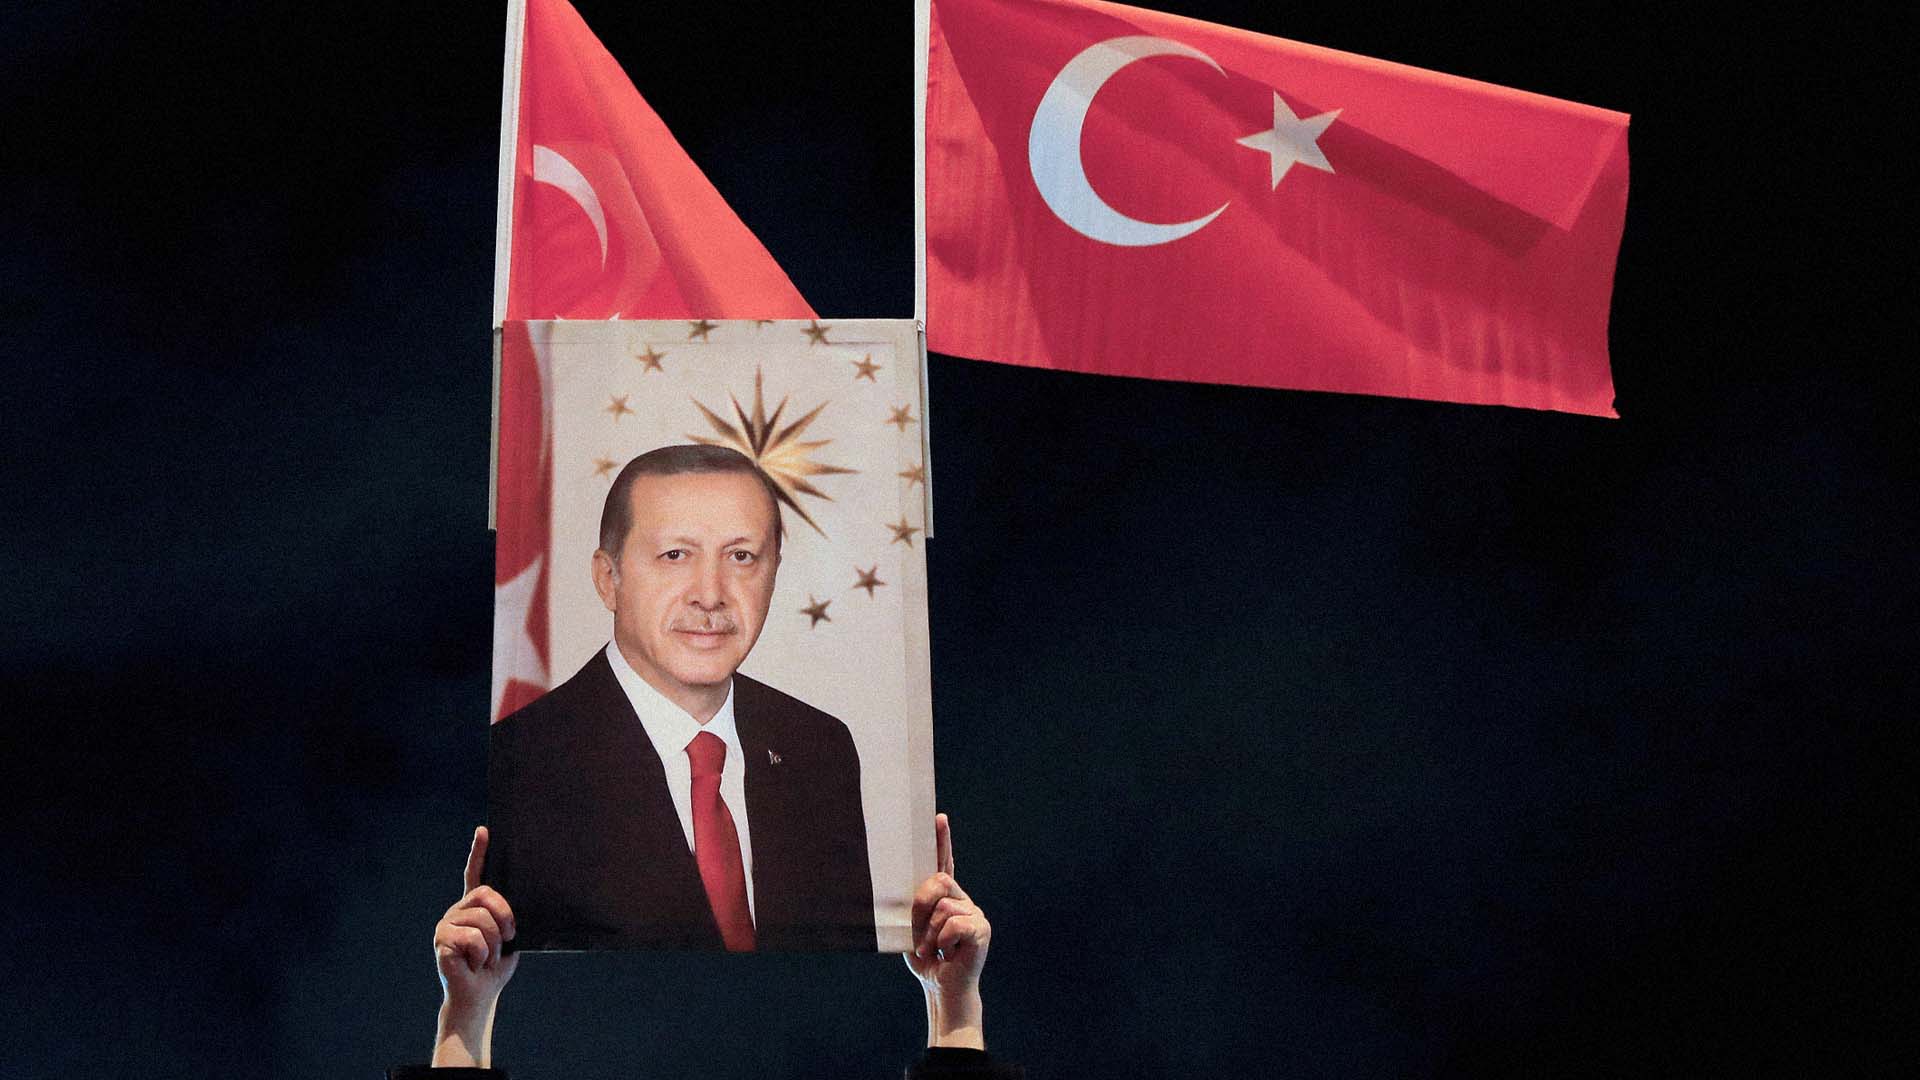 صورة الحدود تنشر خمسة أخبار كاذبة عن الانتخابات التركية تضمن تألقك في مجموعة العائلة على واتساب